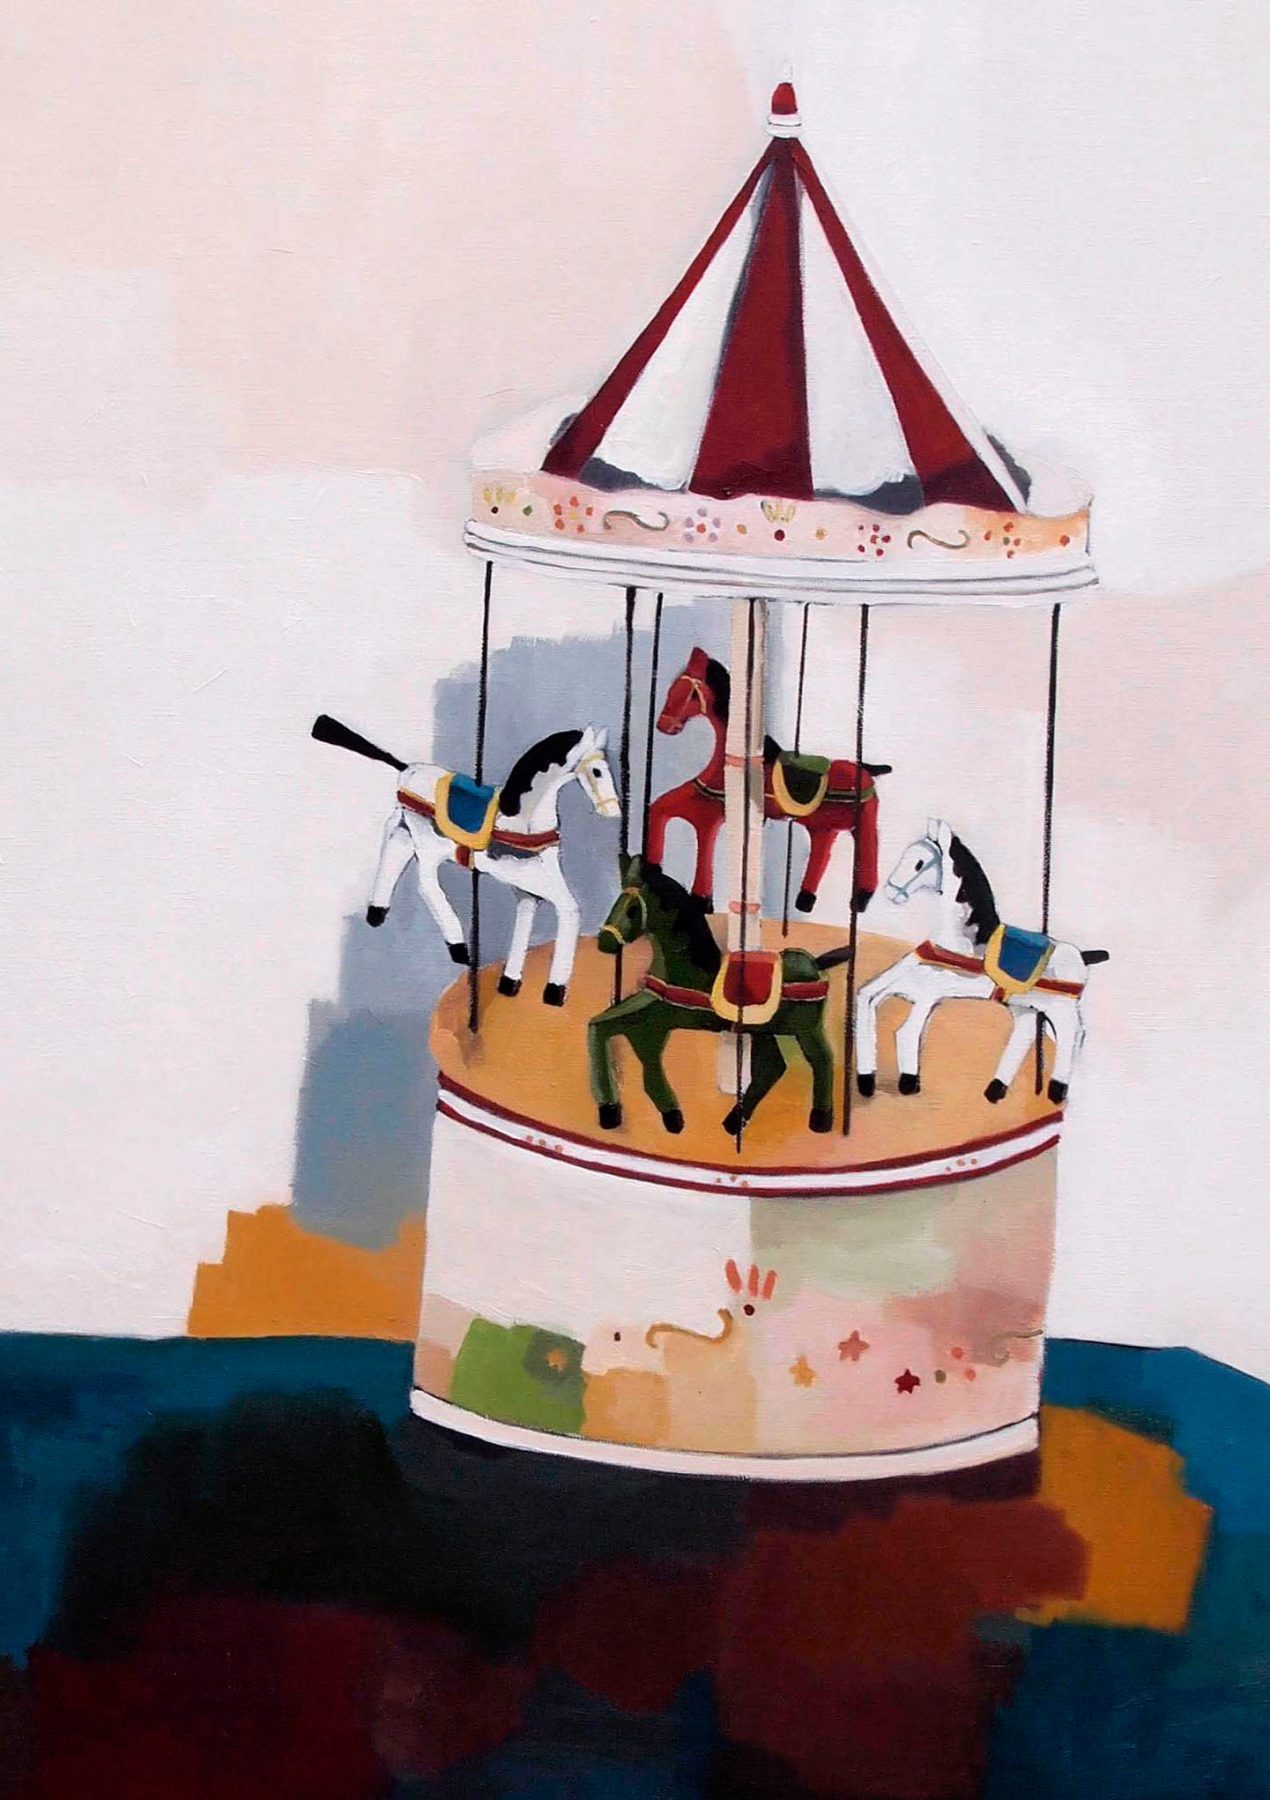 carrousel #4, 80x125 cm, huile sur toile/oil on canvas